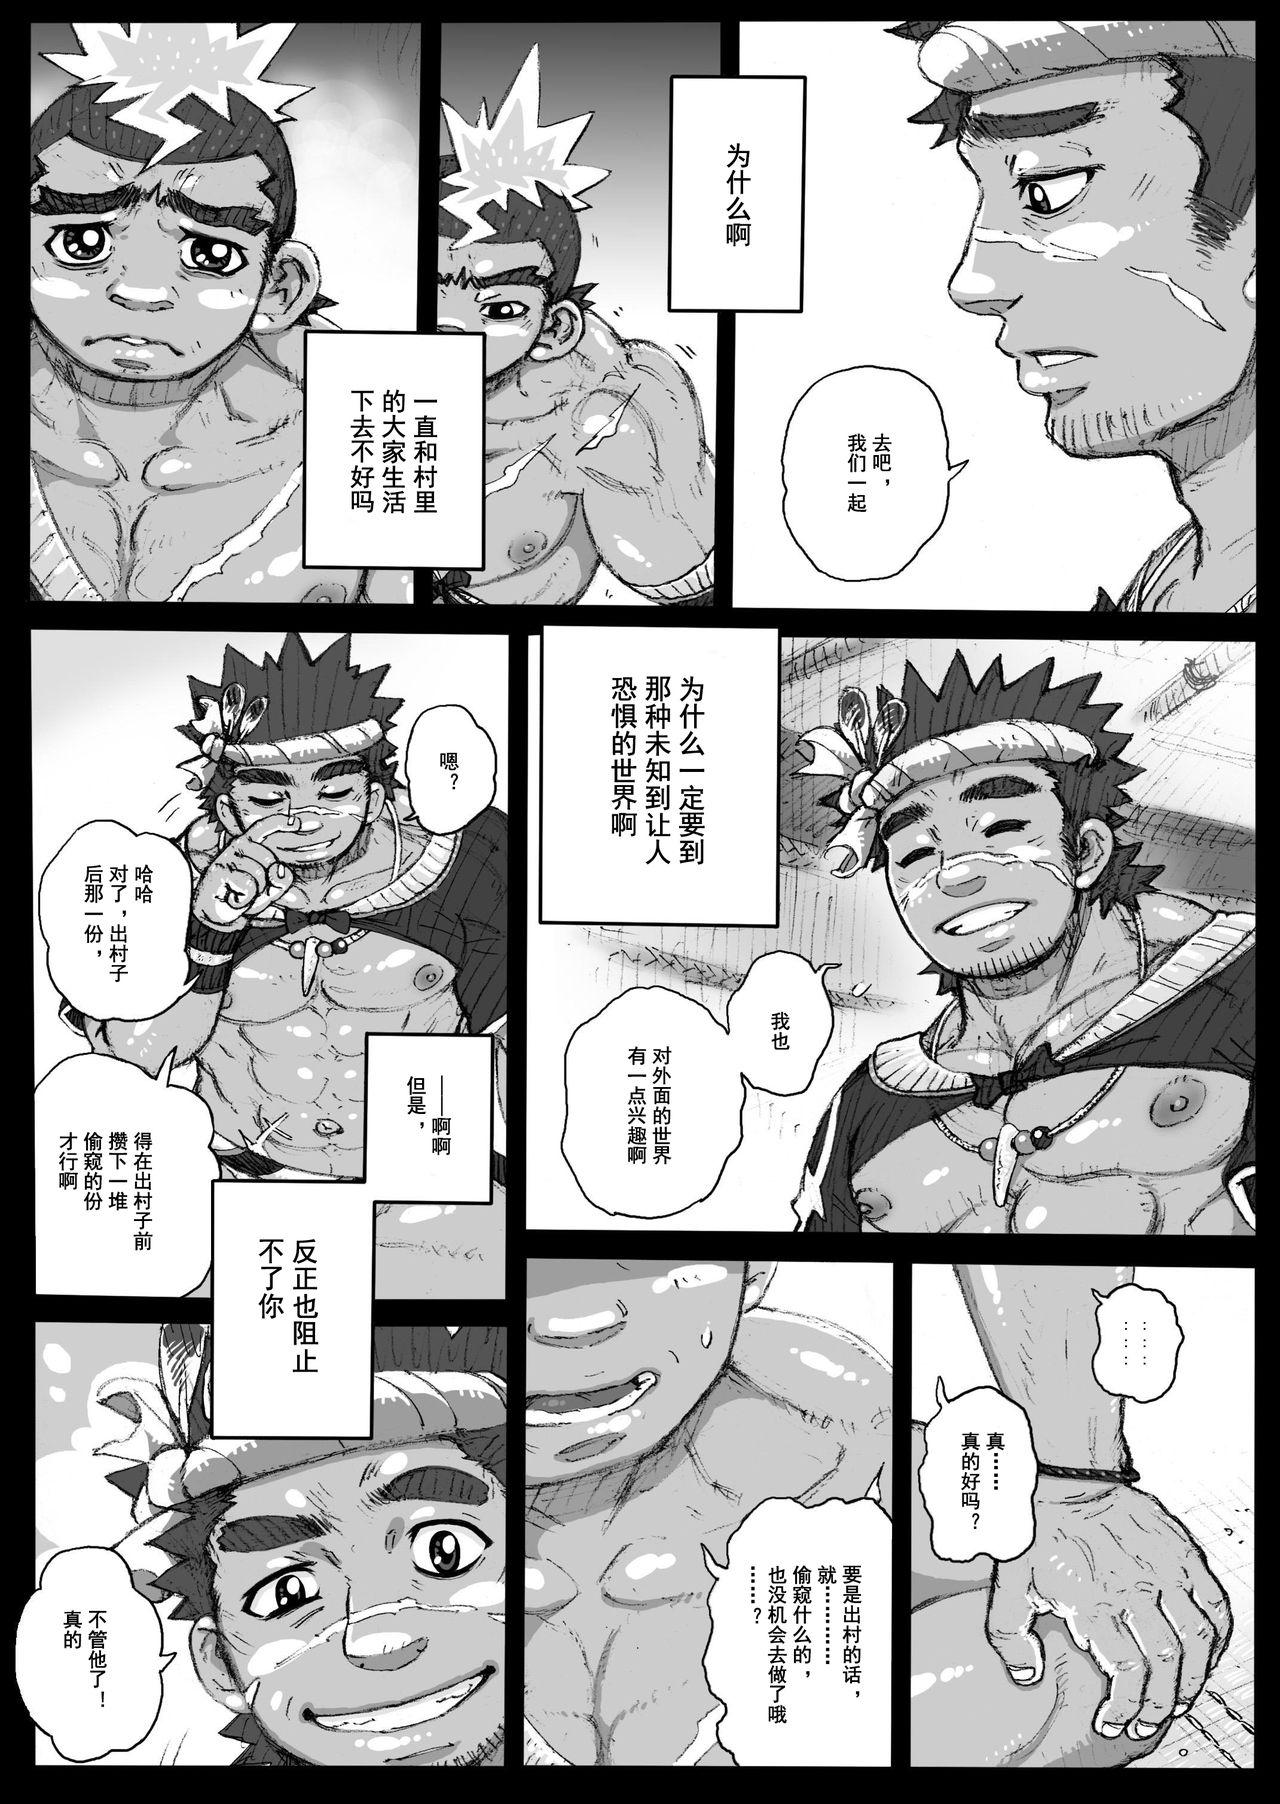 Web Cam Hepoe no Kuni kara 2 - Daiji na Ketsui to Dainashi no Funiki no Maki Leite - Page 9